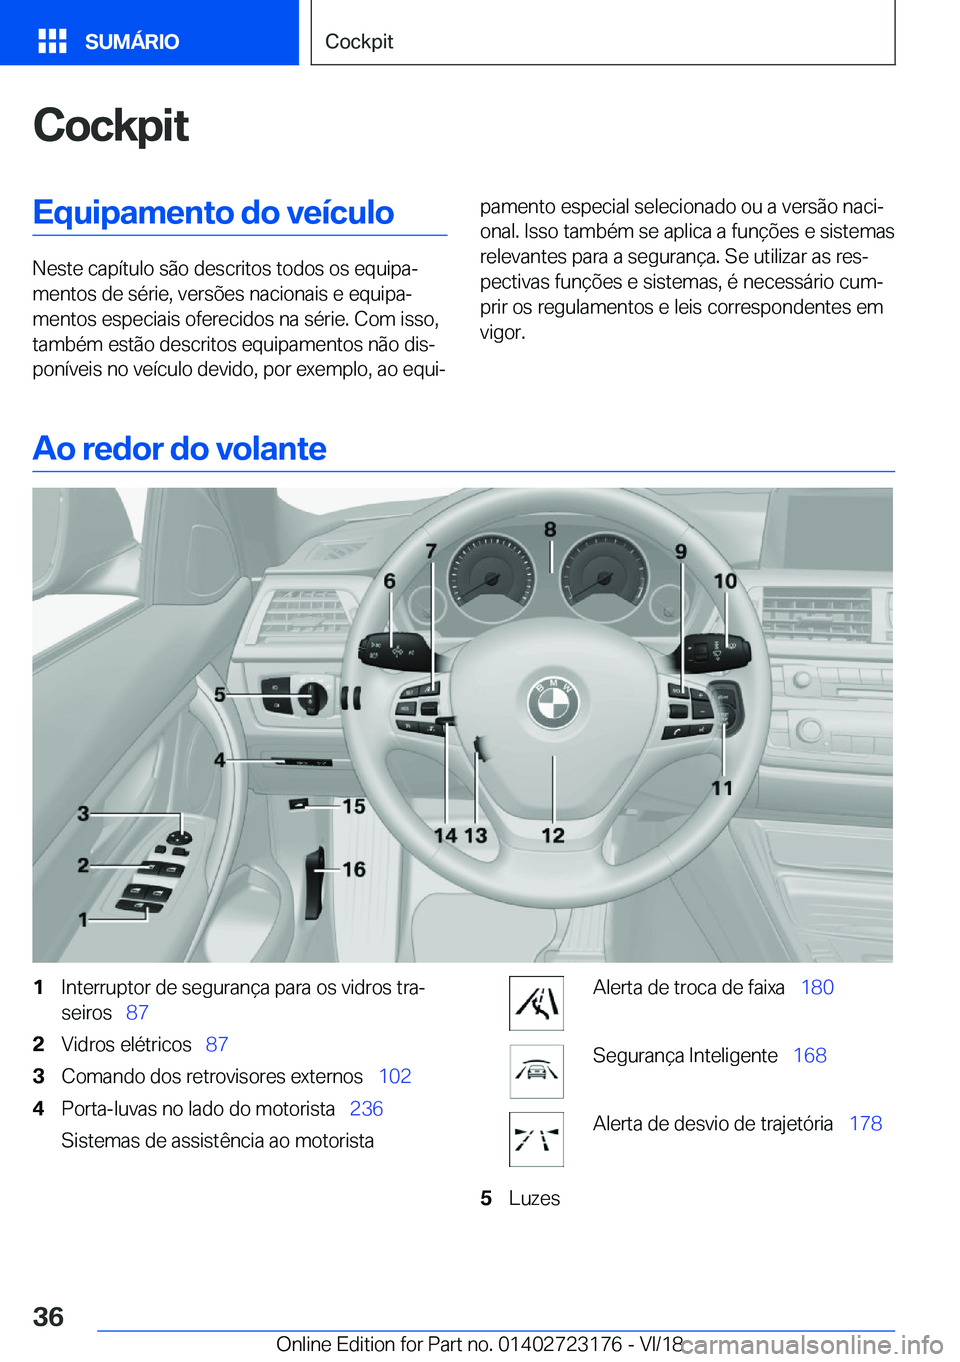 BMW 4 SERIES GRAN COUPE 2019  Manual do condutor (in Portuguese) �C�o�c�k�p�i�t�E�q�u�i�p�a�m�e�n�t�o��d�o��v�e�